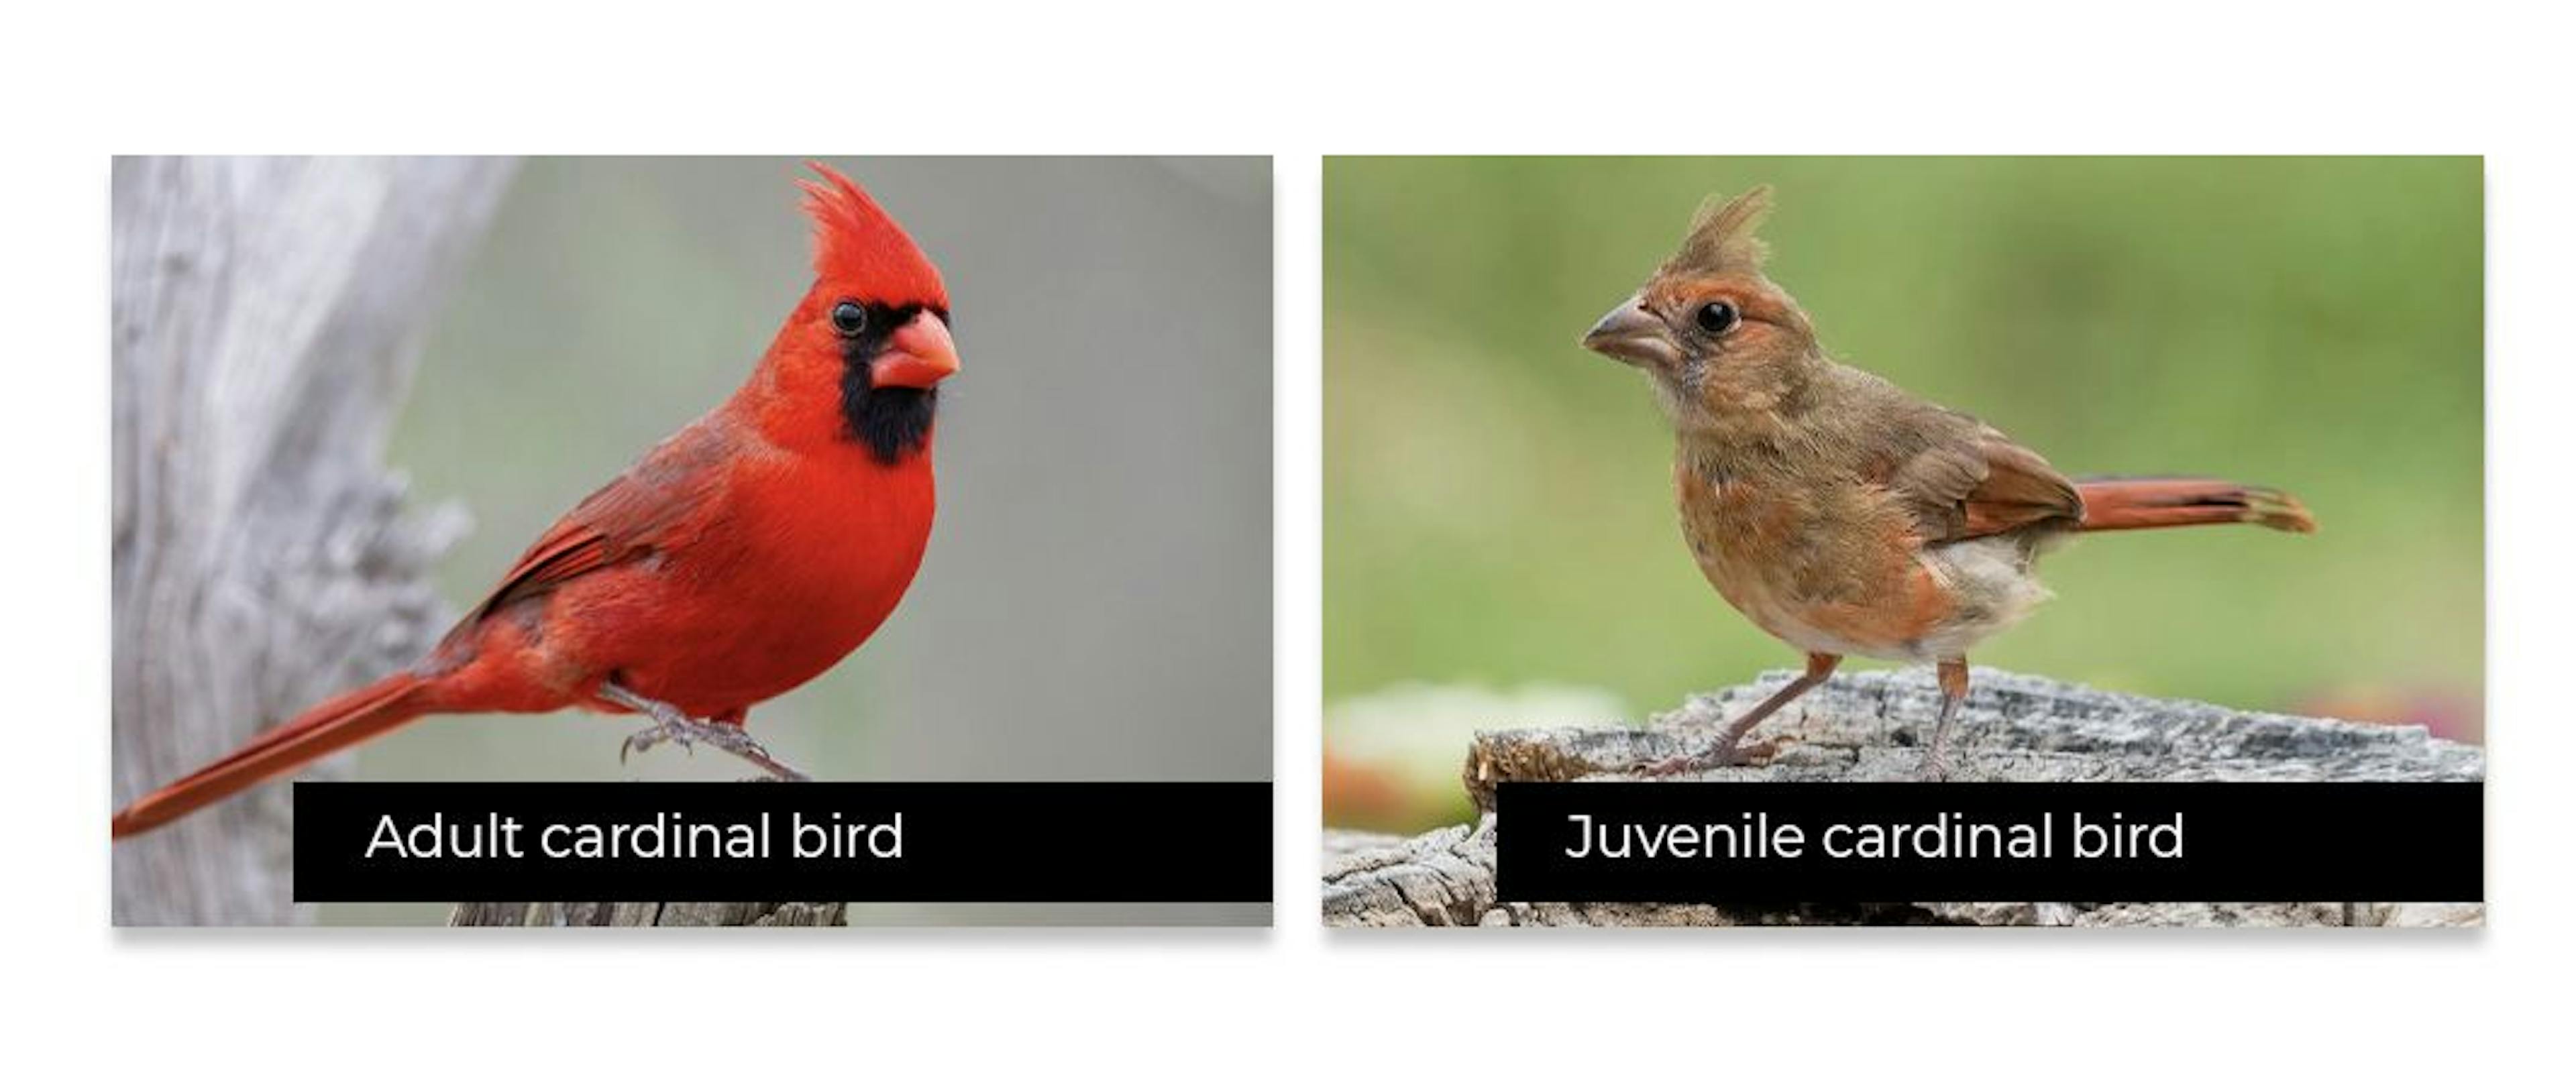 Thường thì chim non trông không giống chim trưởng thành